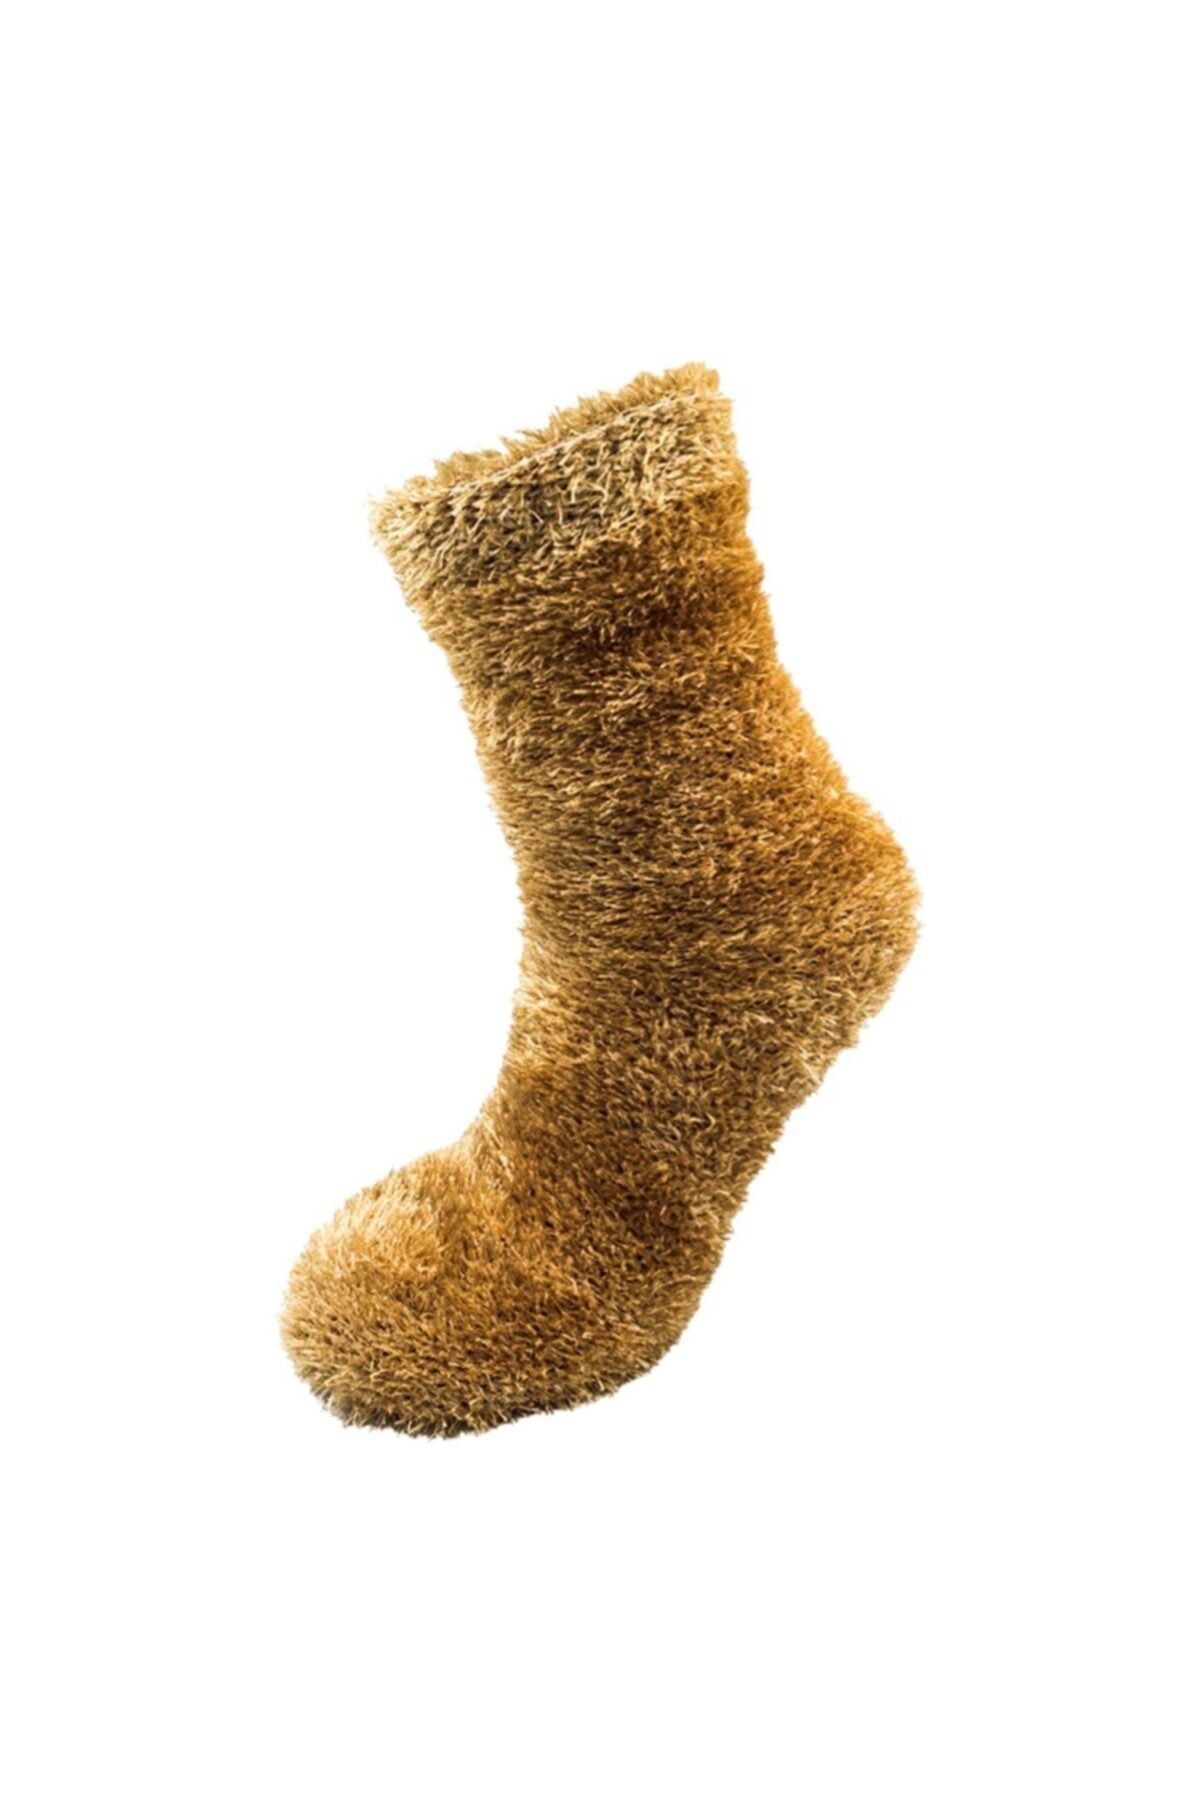 pazariz Pazarız Rengarenk Çoraplar Soket Çorap Gökkuşağı Paketi